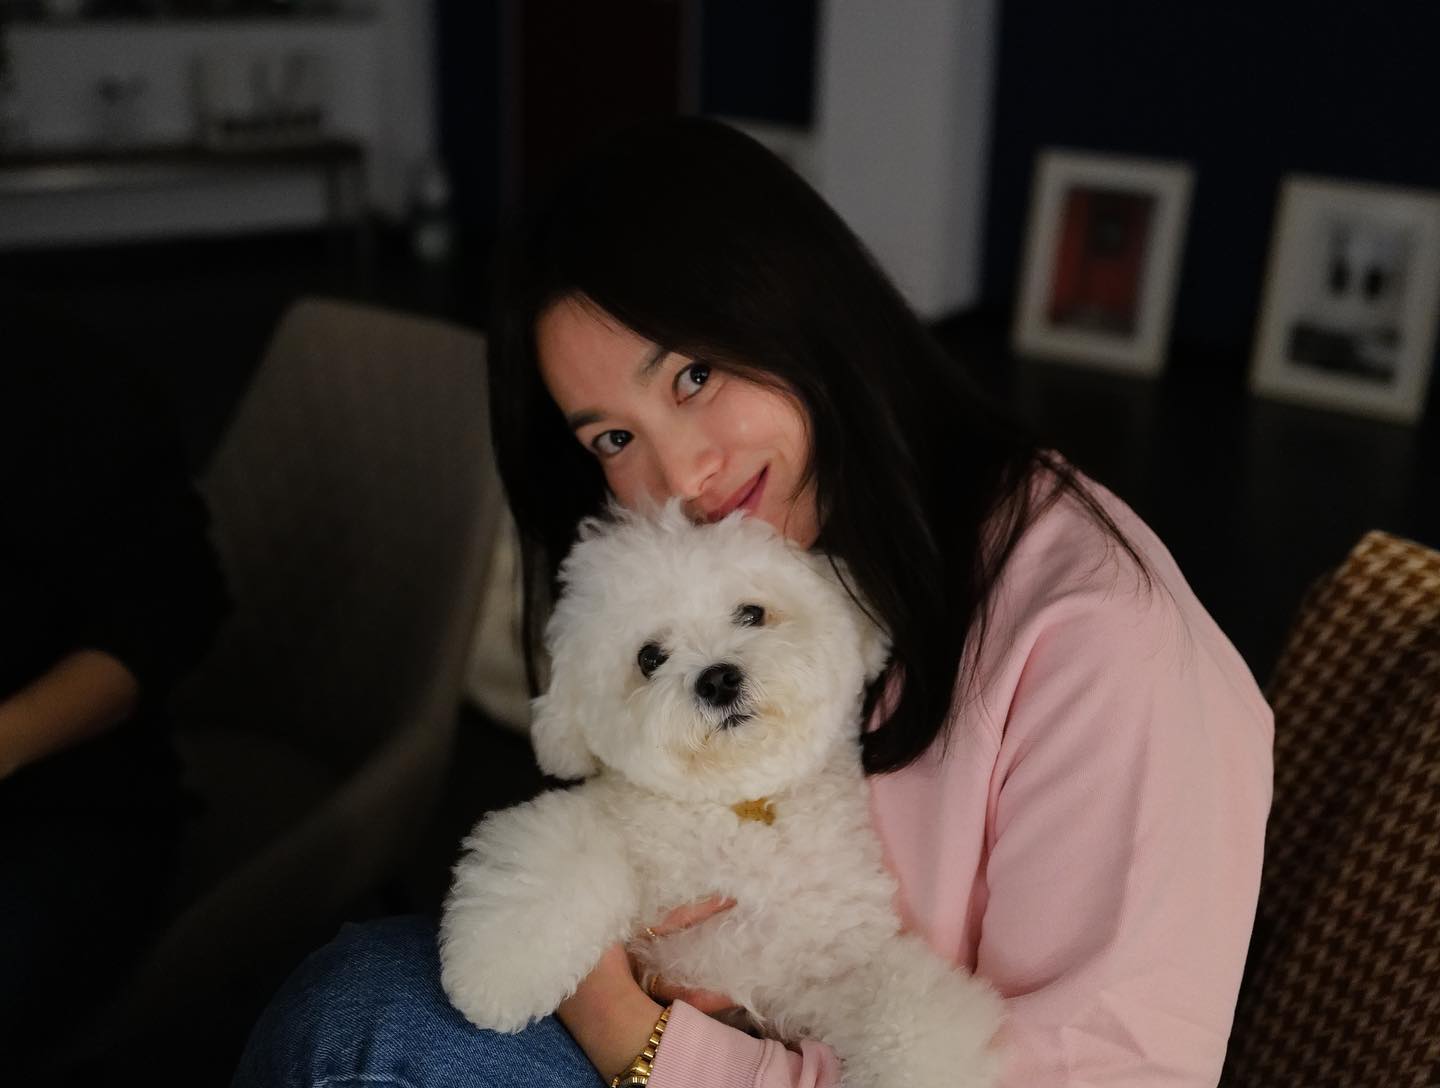 5 năm qua, Song Hye Kyo kín tiếng về đời tư. Trên trang cá nhân, cô chia sẻ ảnh bầu bạn với thú cưng, tụ tập bạn bè, tận hưởng cuộc sống tự do, thoải mái, tránh xa những nơi ồn ào khi không phải làm việc. Nữ diễn viên cũng là đại gia 